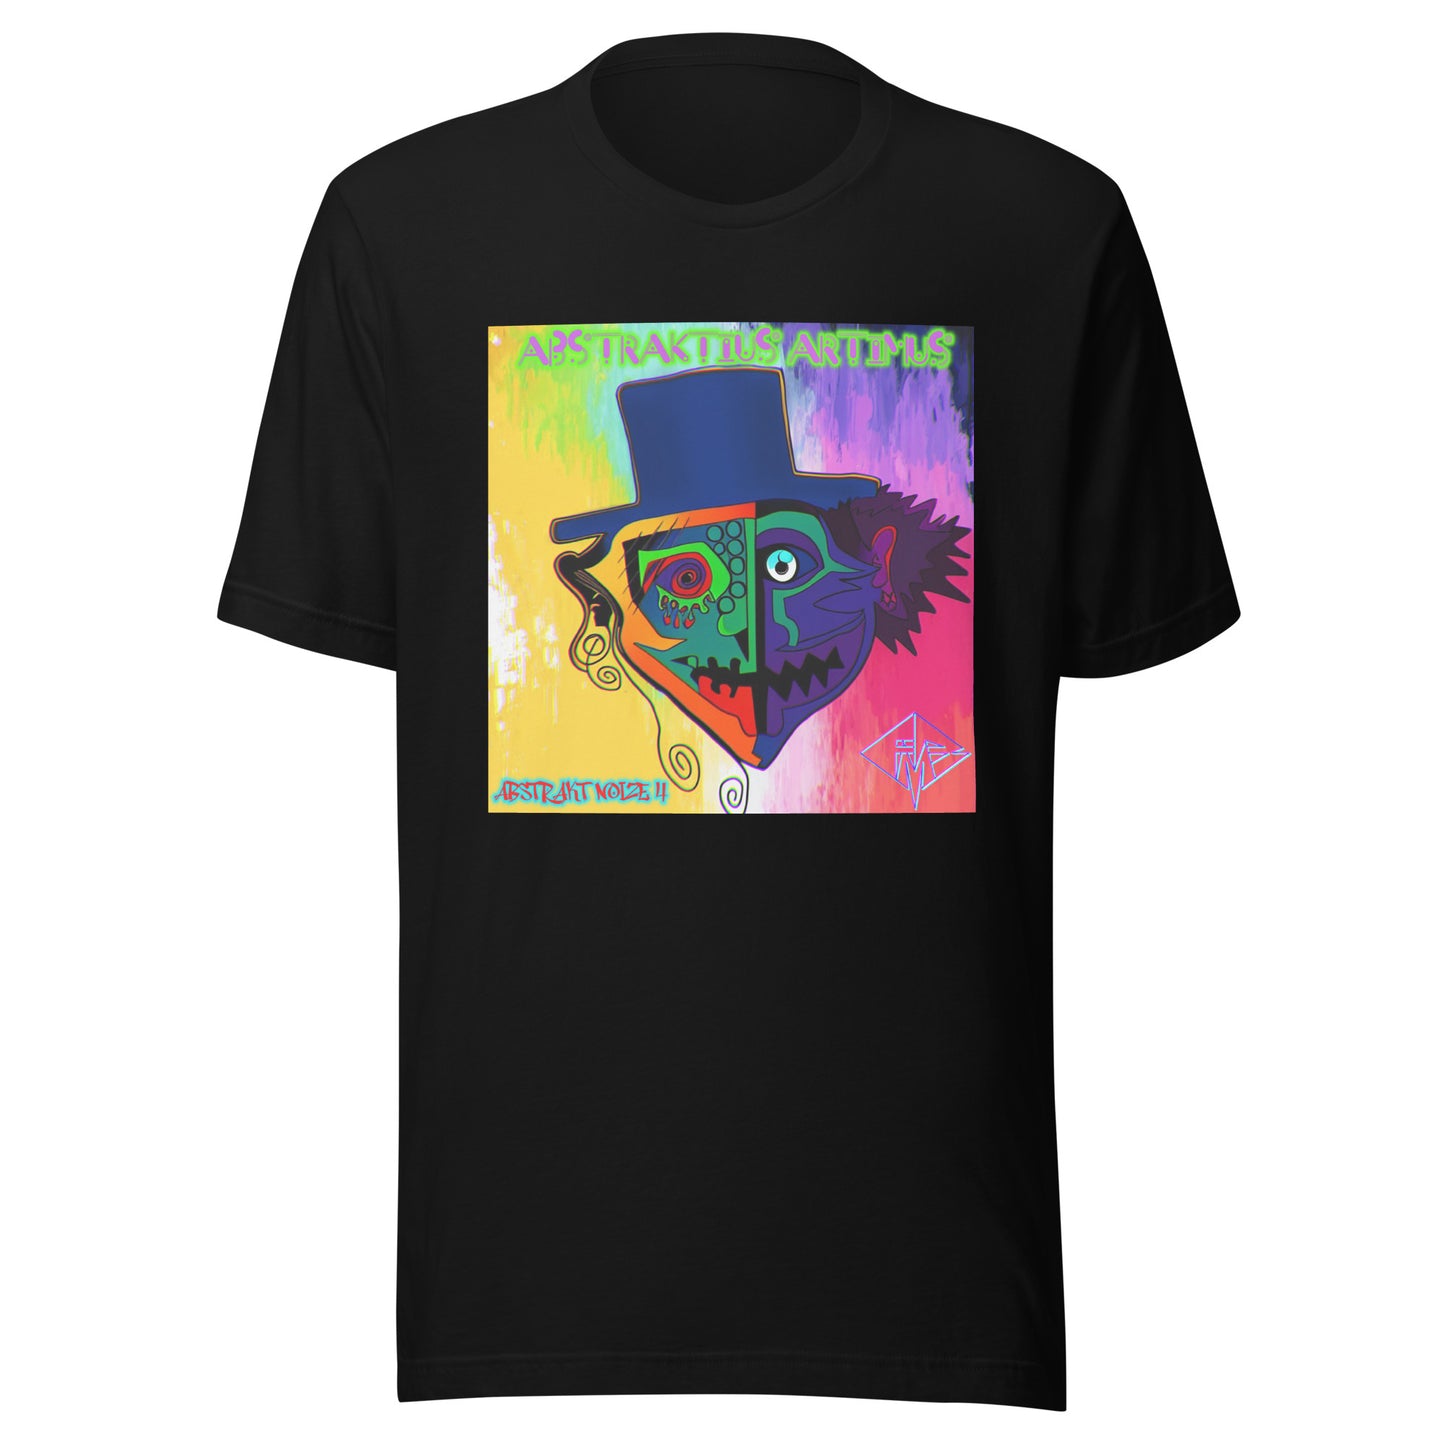 Abstraktius Artimus - Abstrakt Noize 4 T-Shirt